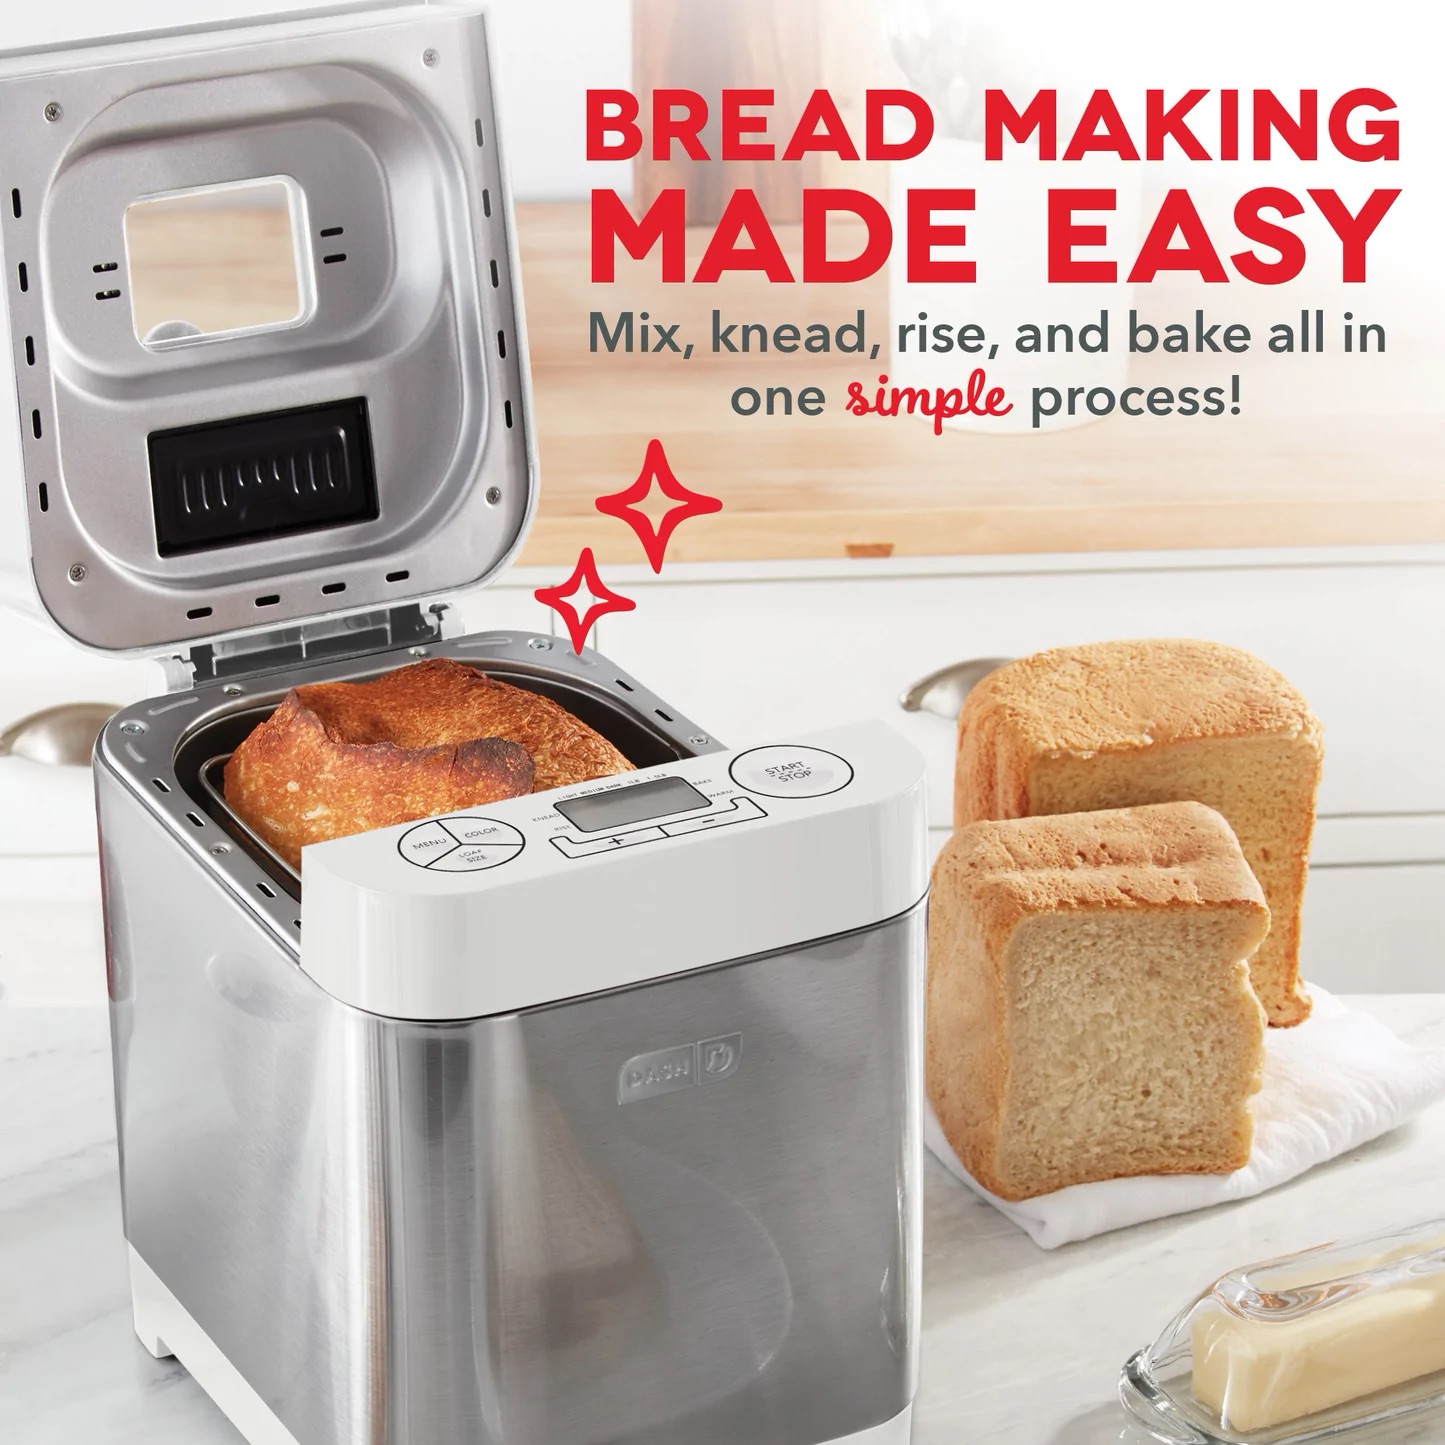 Dash面包机 Bread Maker | Homemade Bread Recipes | Dash